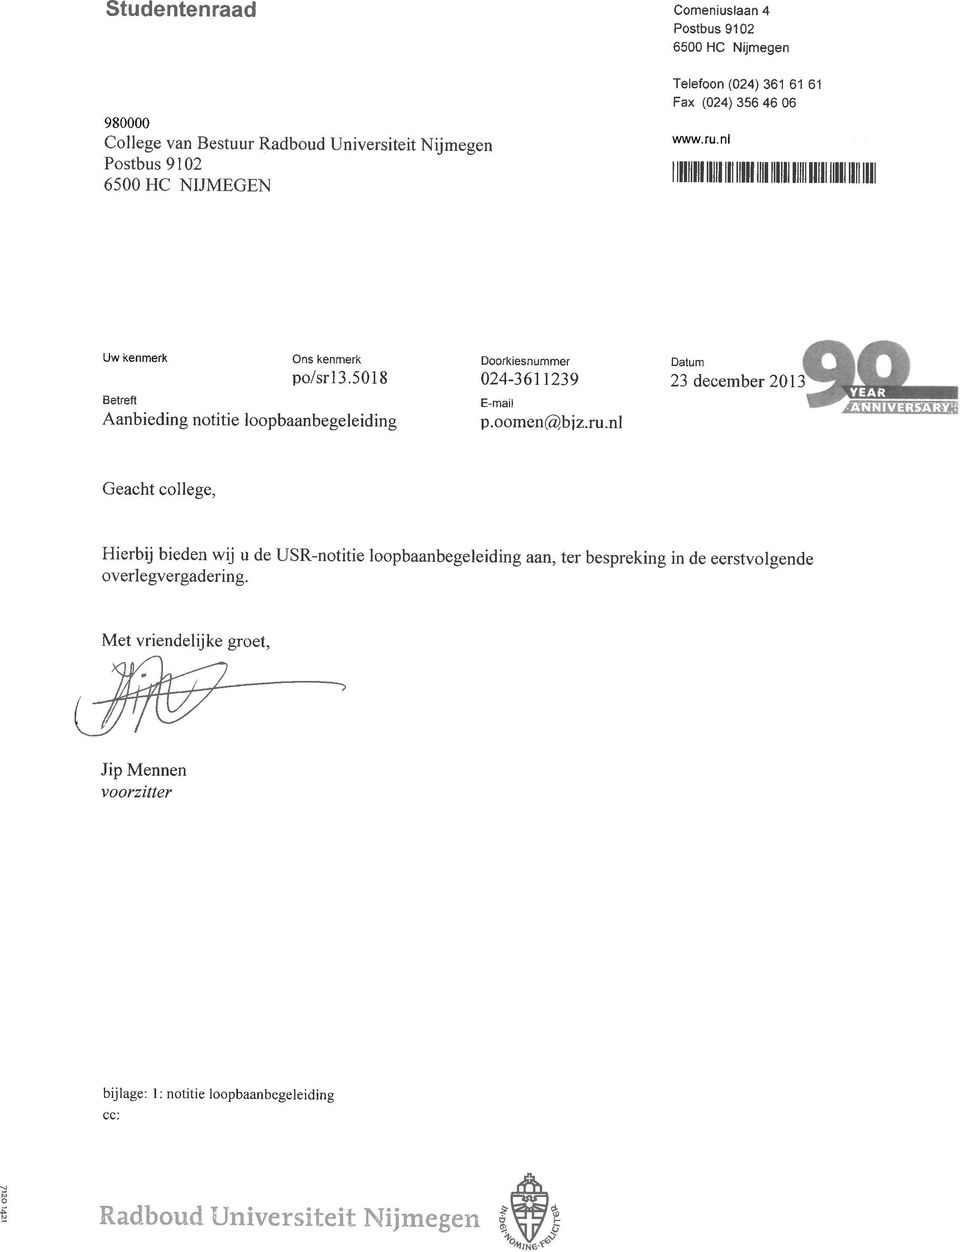 5018 Aanbieding notitie loopbaanbegeleiding Doorkiesnummer 024-3611239 E-mail p.oomen(%bjz.ru.nl Datum 23december2013 ^iii'ii'ik7j4:».